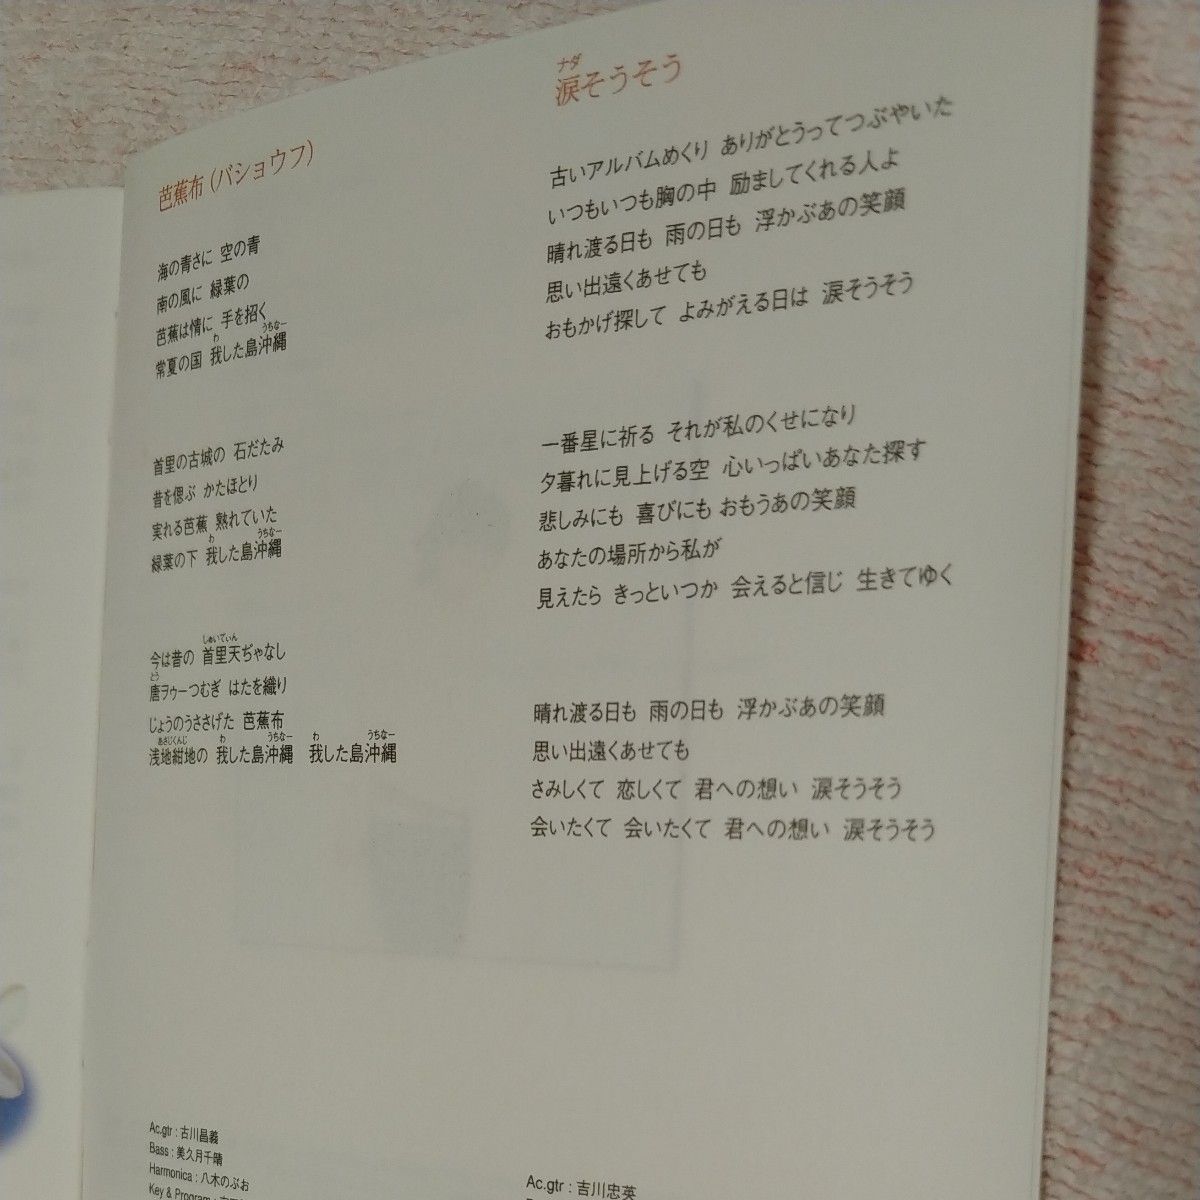 夏川りみ CD アルバム【てぃだ 〜太陽風ぬ想い〜】 02/9/21発売 オリコン加盟店